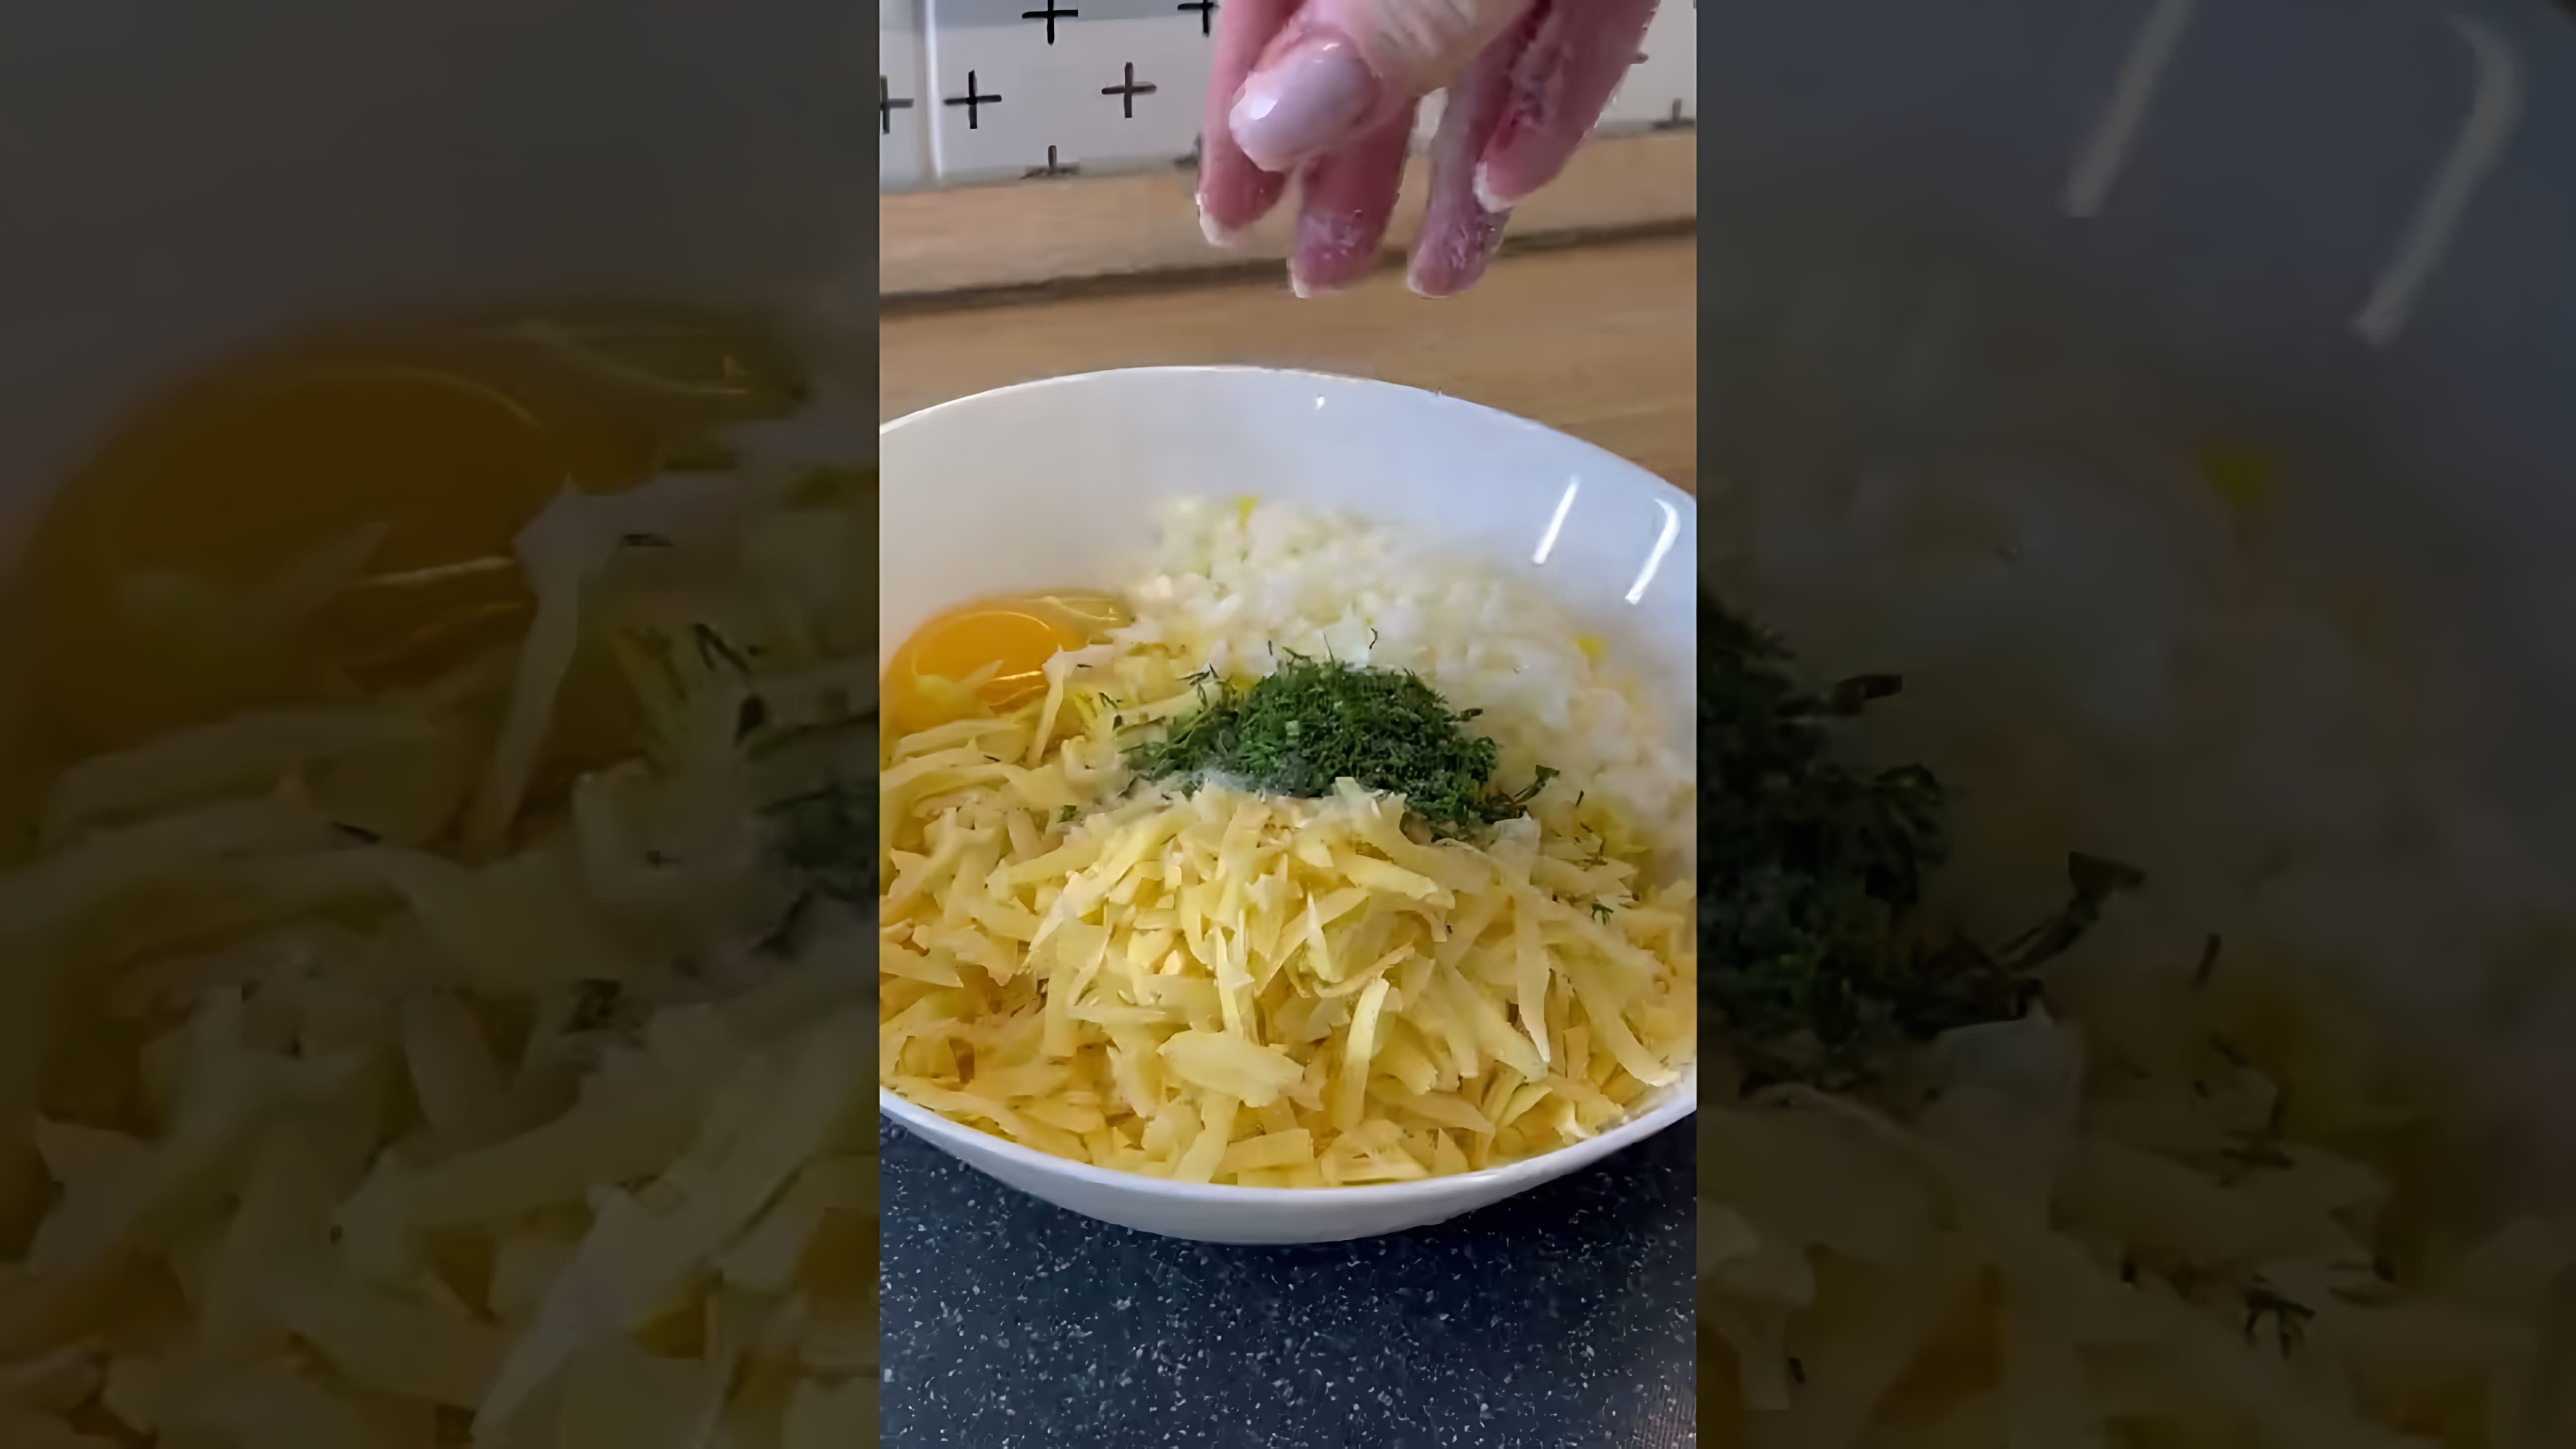 В этом видео демонстрируется рецепт приготовления вкусного блюда из картофеля и хлеба, когда в холодильнике практически ничего нет